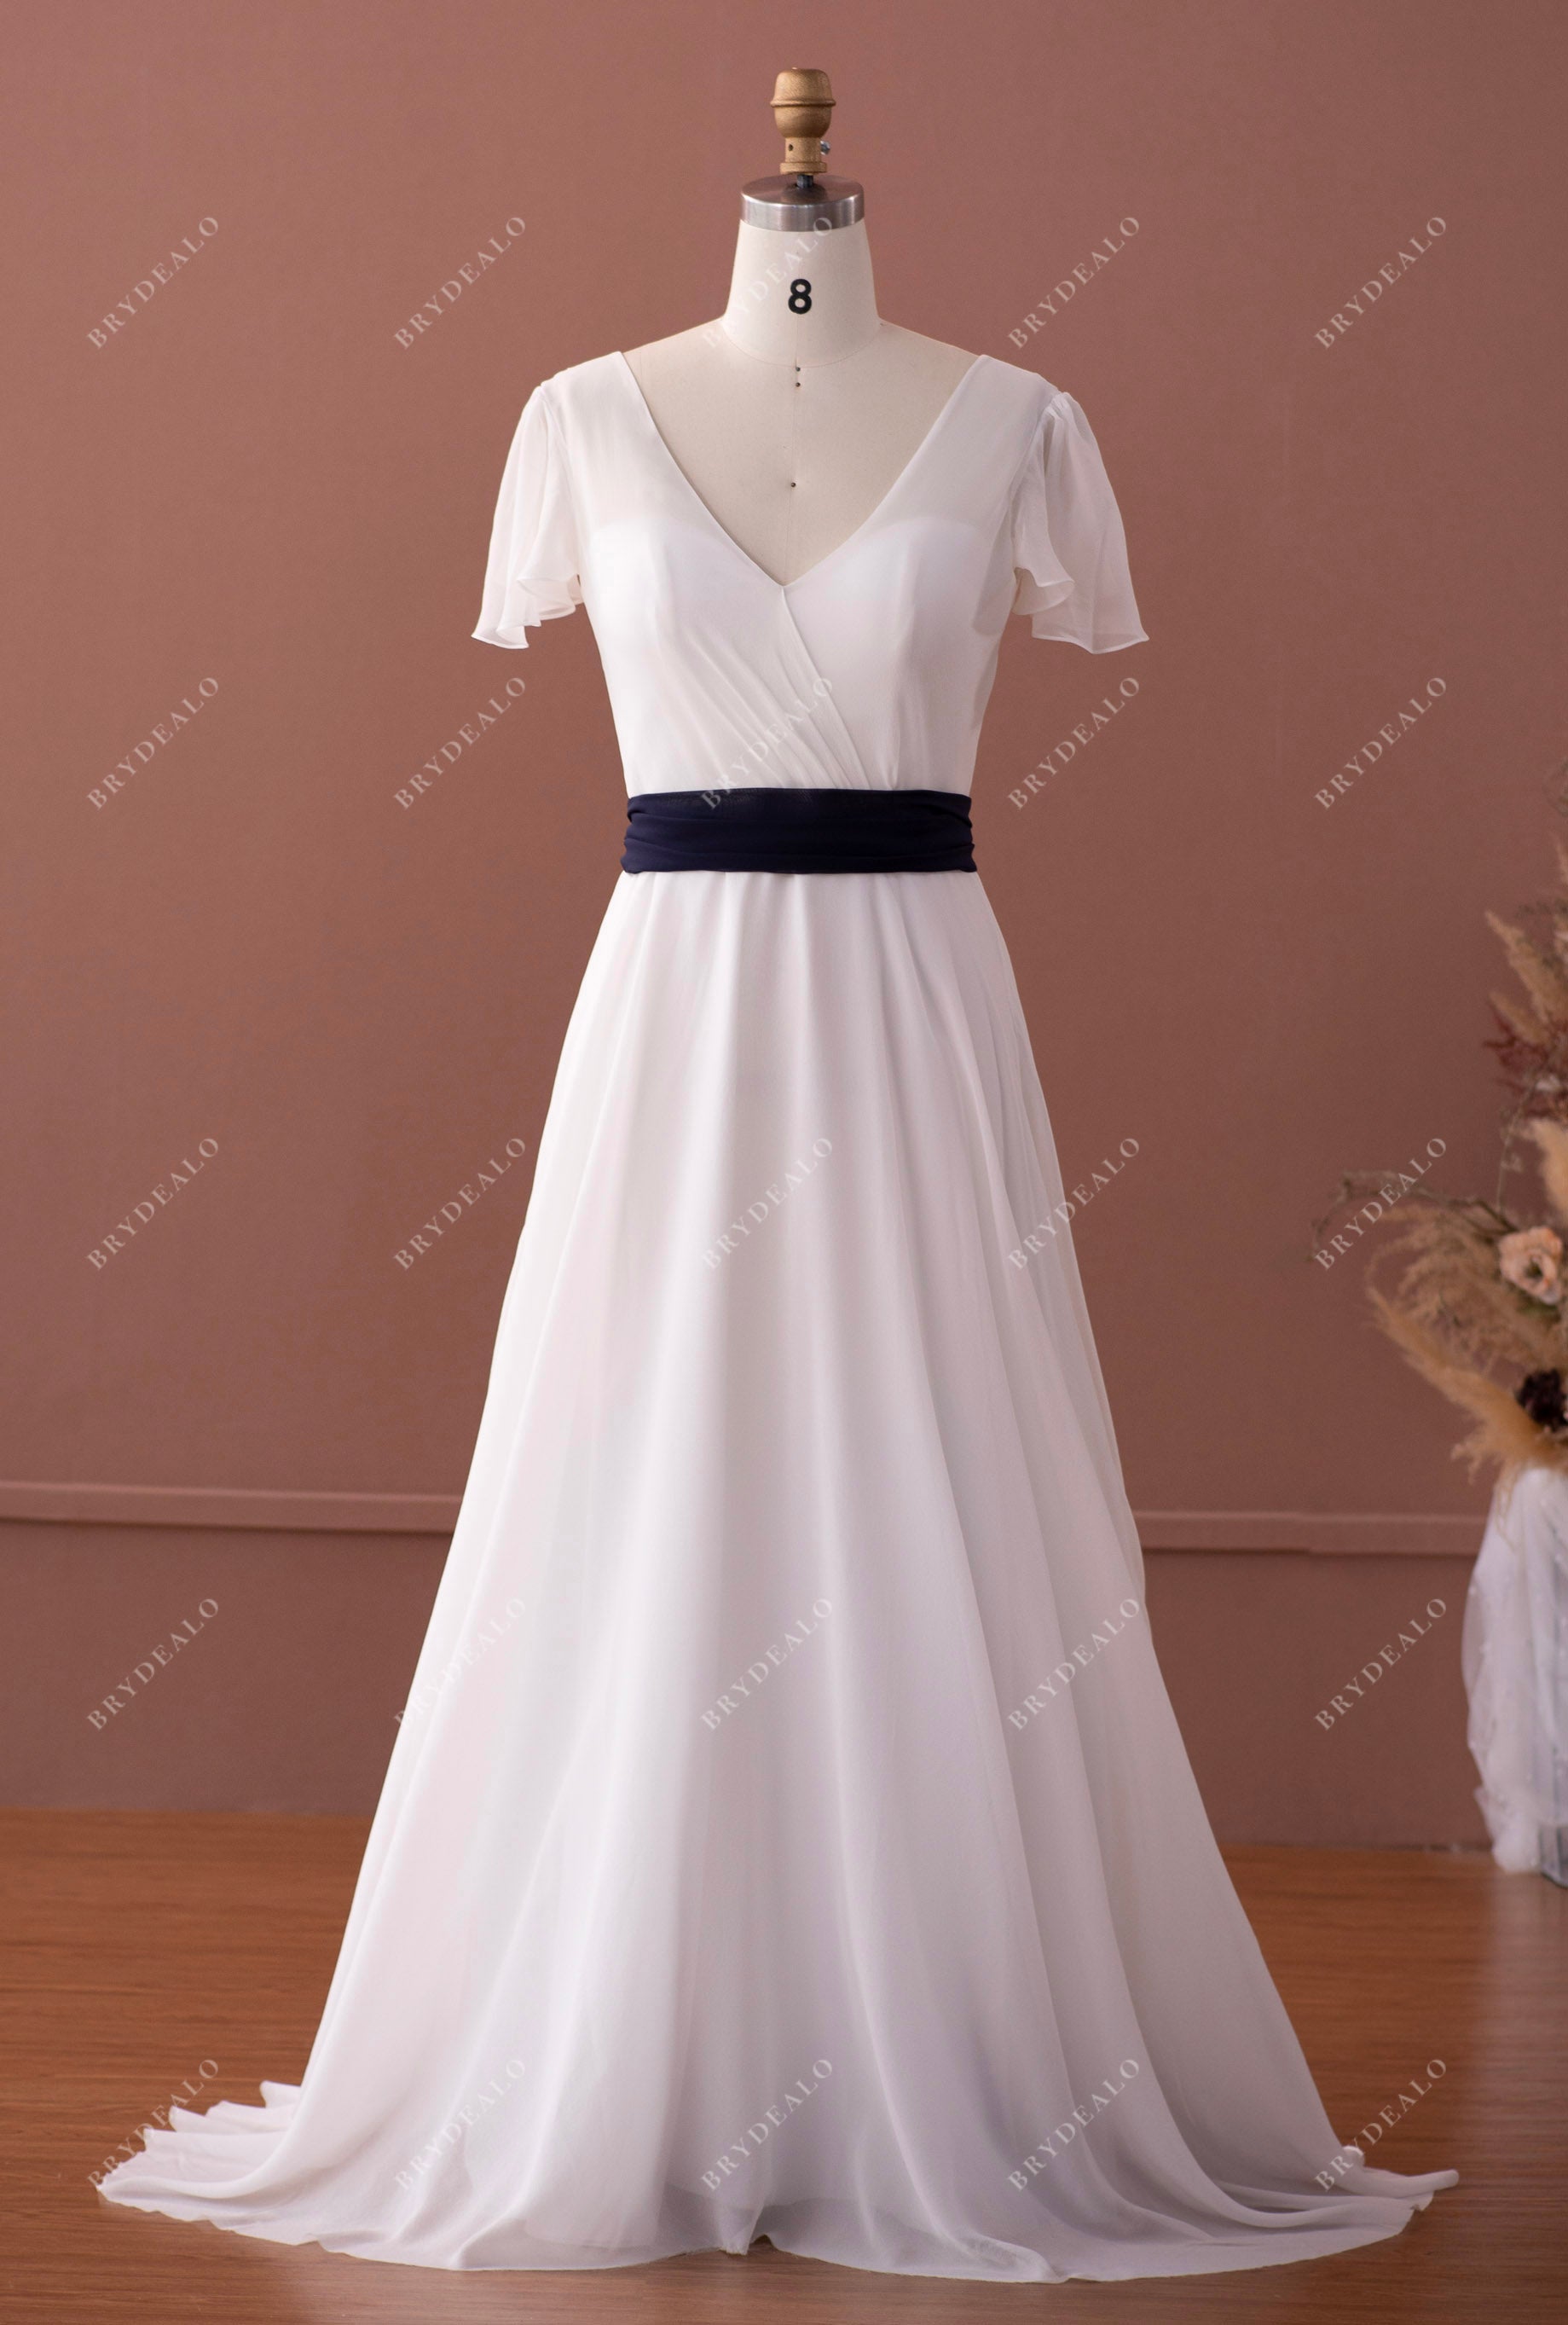 silk georgette A-line beach wedding dress navy sash